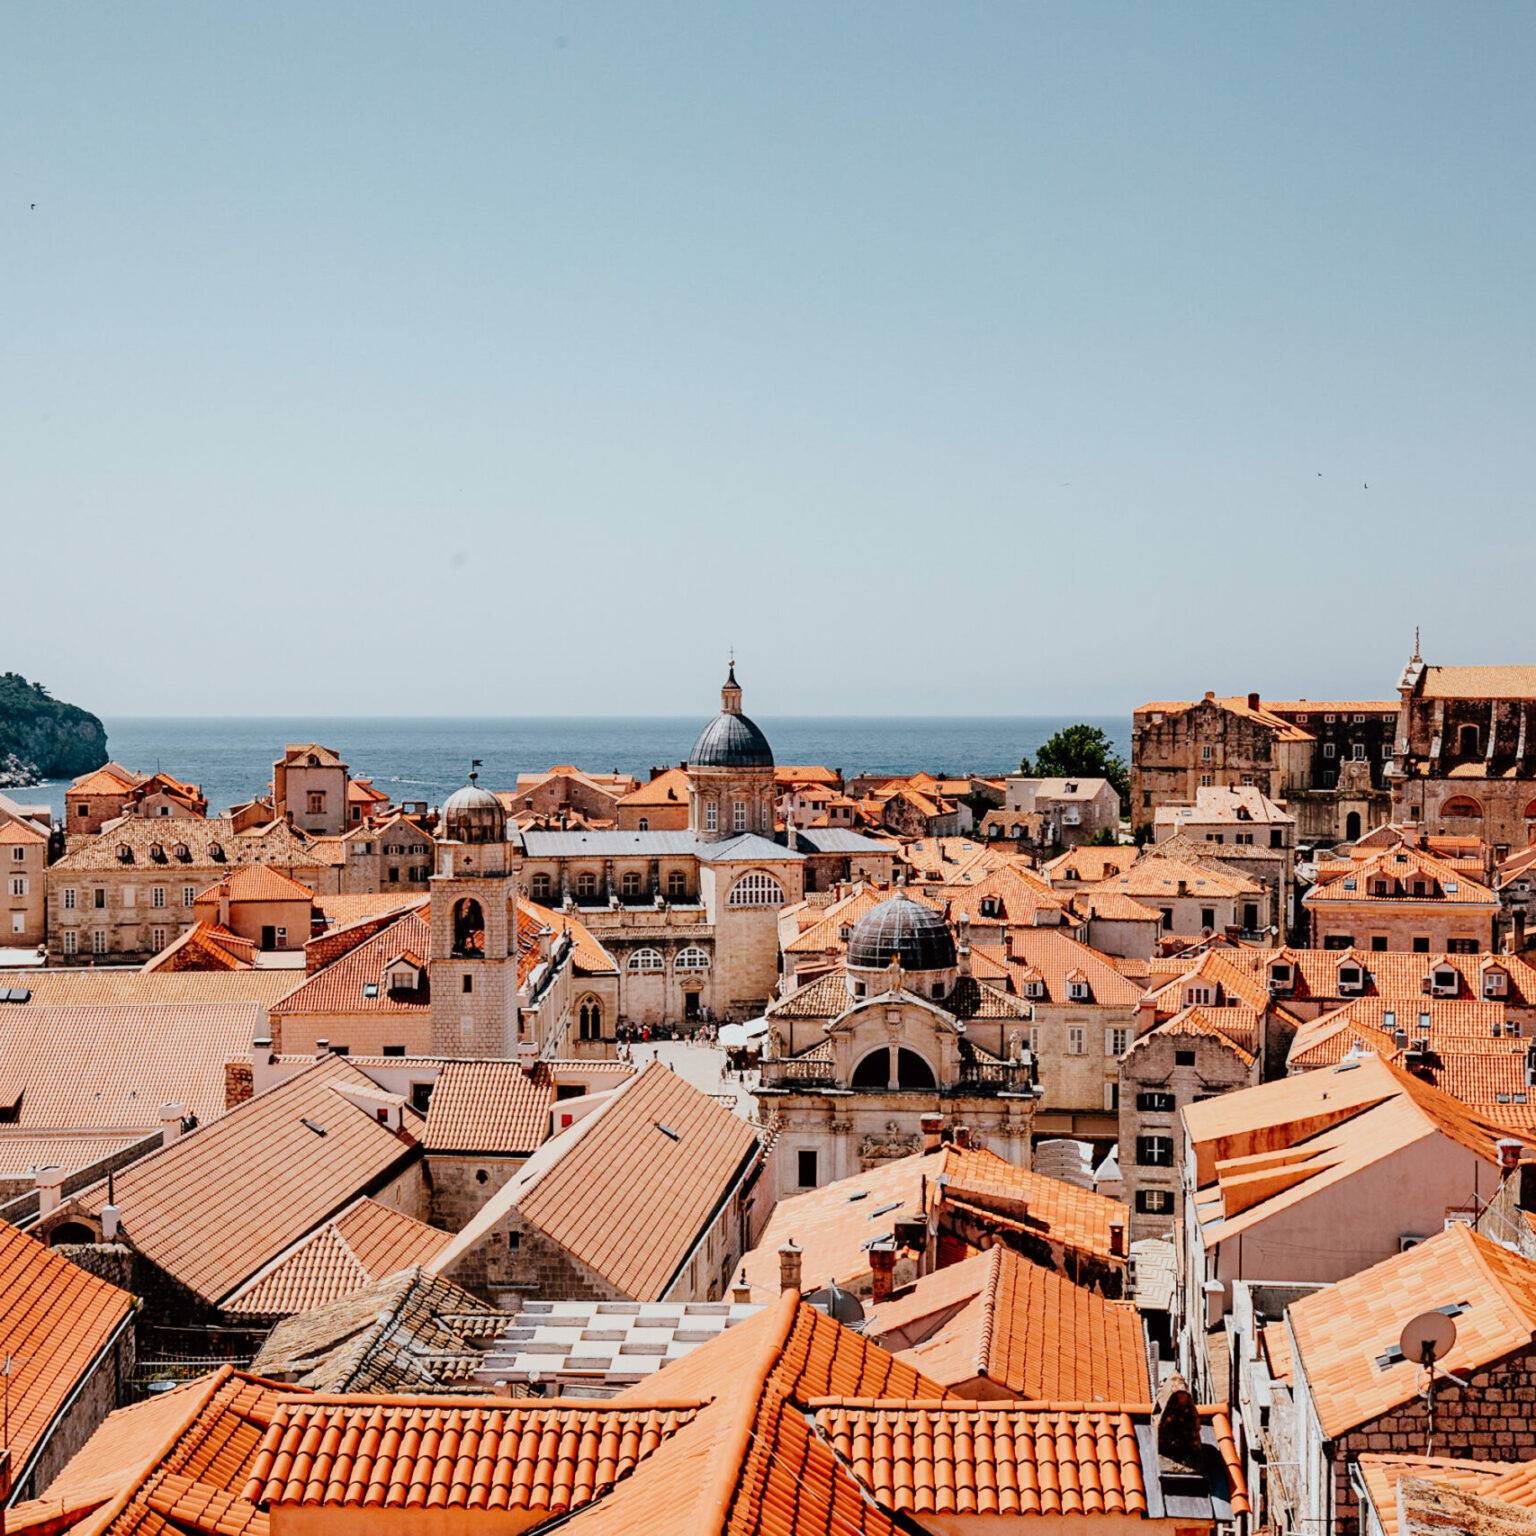 Blick auf die Altstadt und Kirchturm von Dubrovnik.